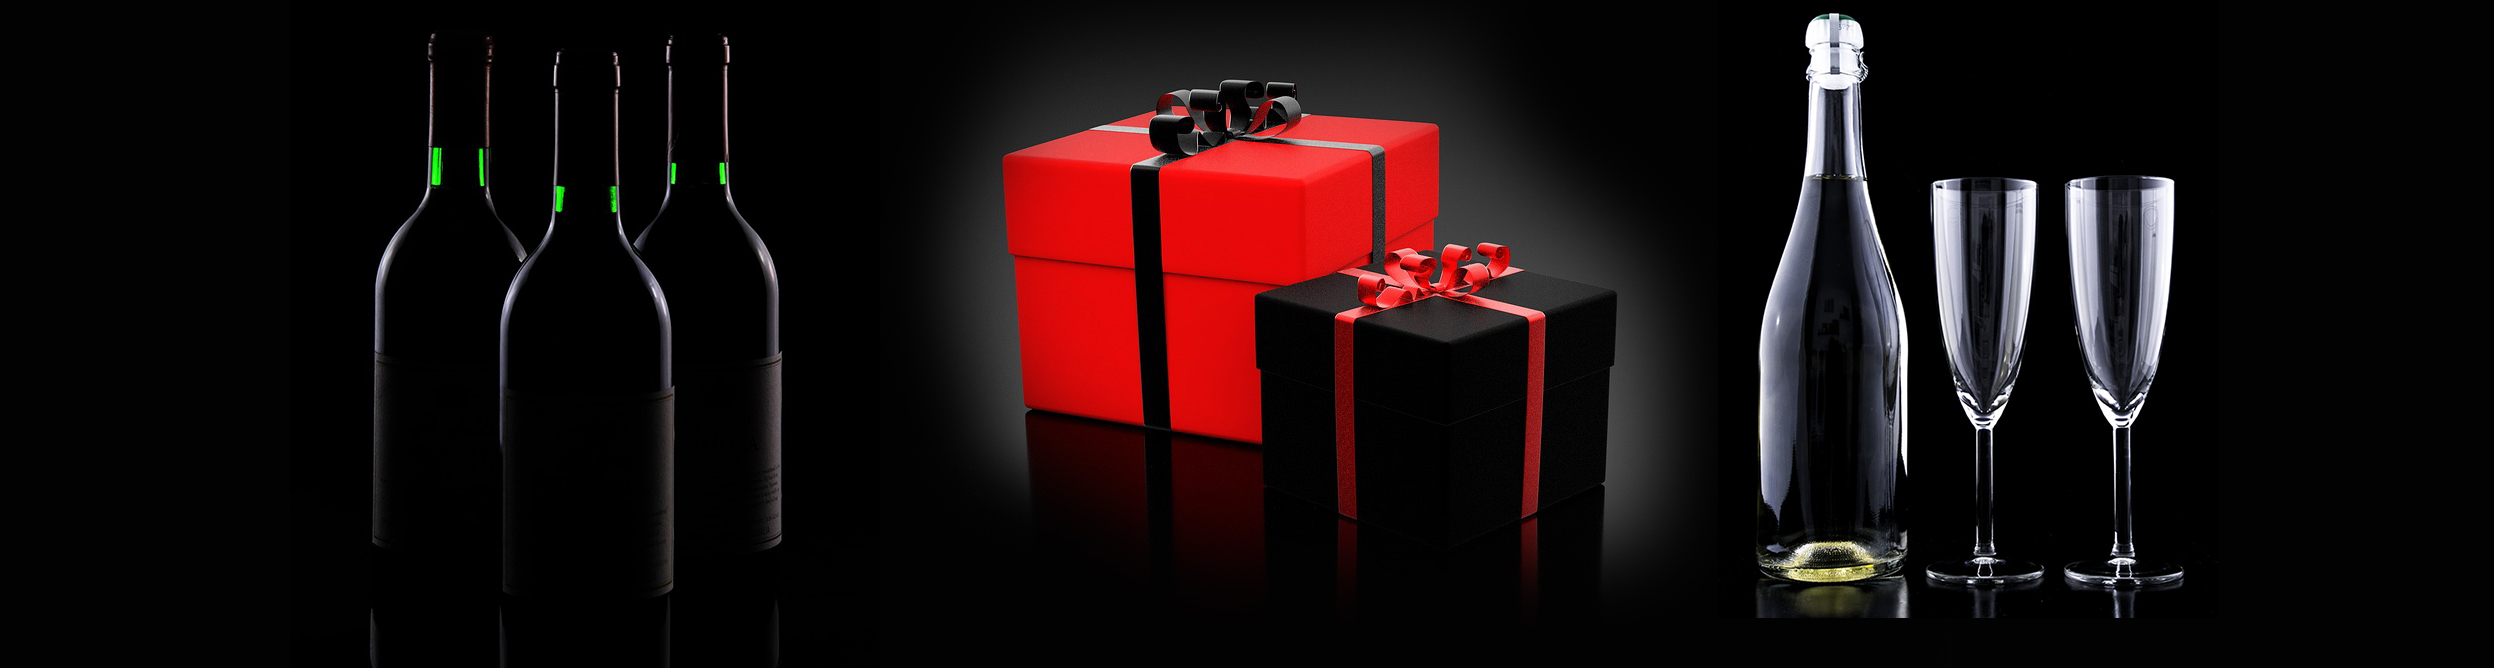 Borok-Ajándékötletek-Különleges ajándékok